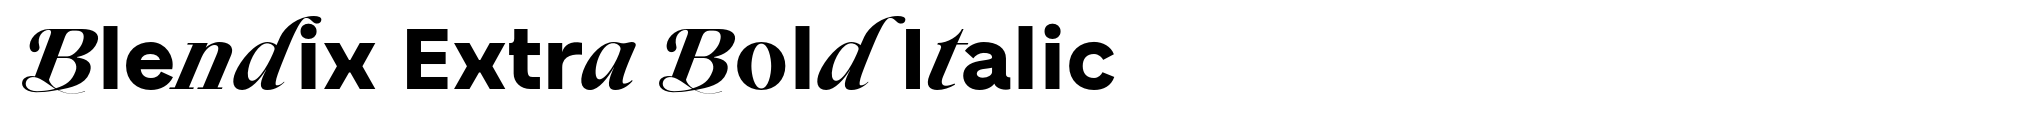 Blendix Extra Bold Italic image